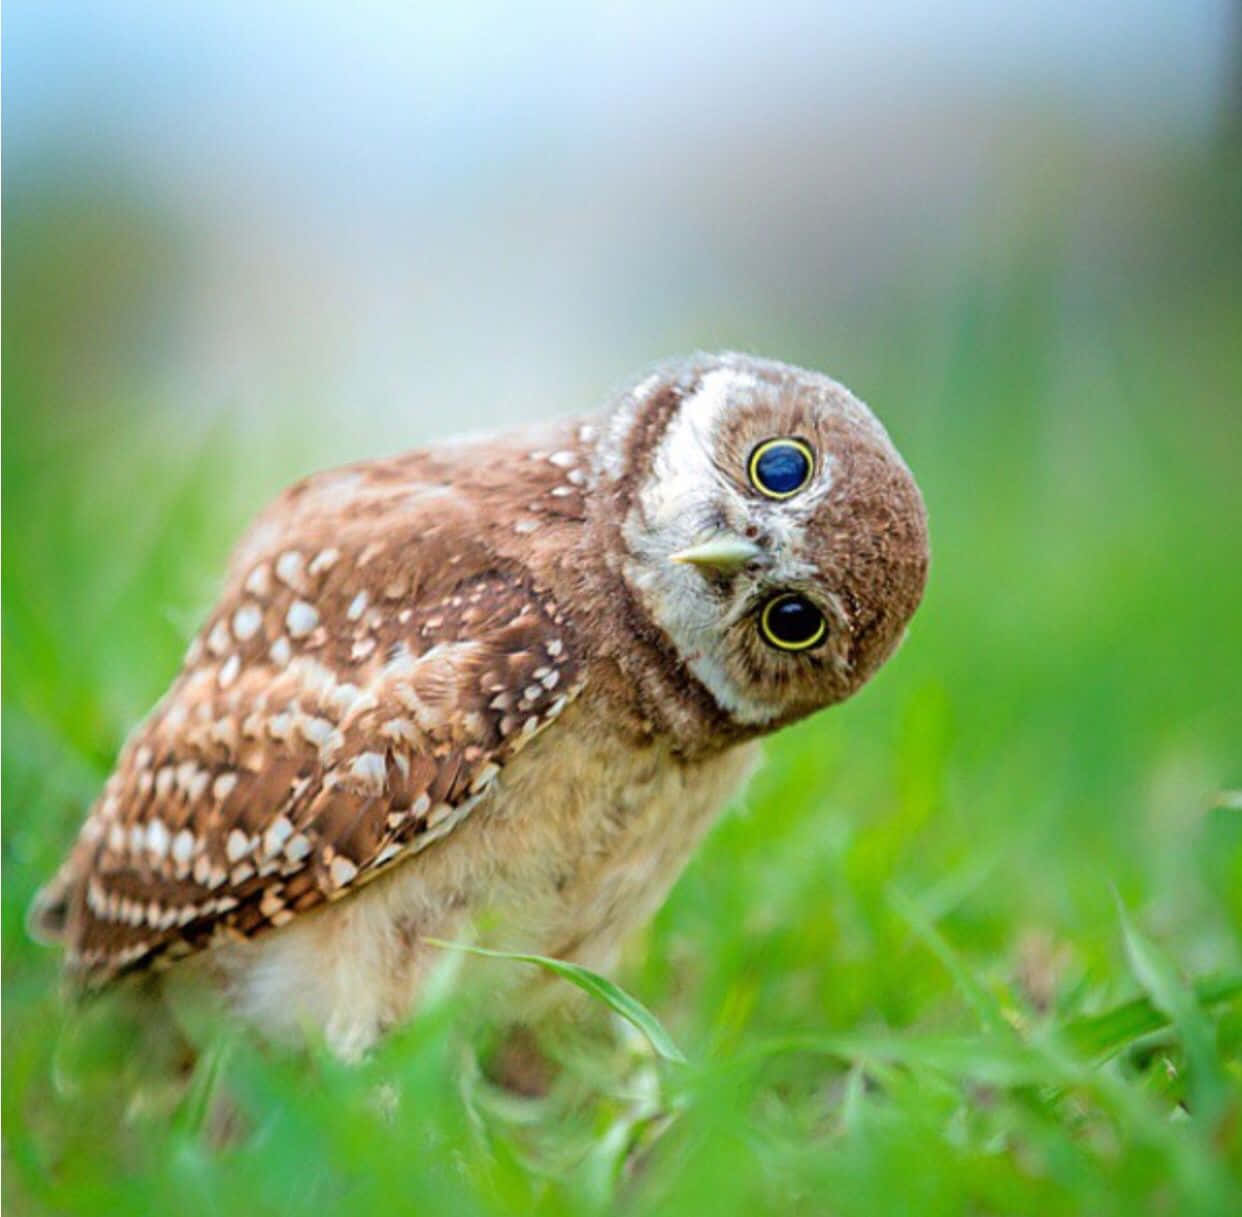 A Curious Baby Owl